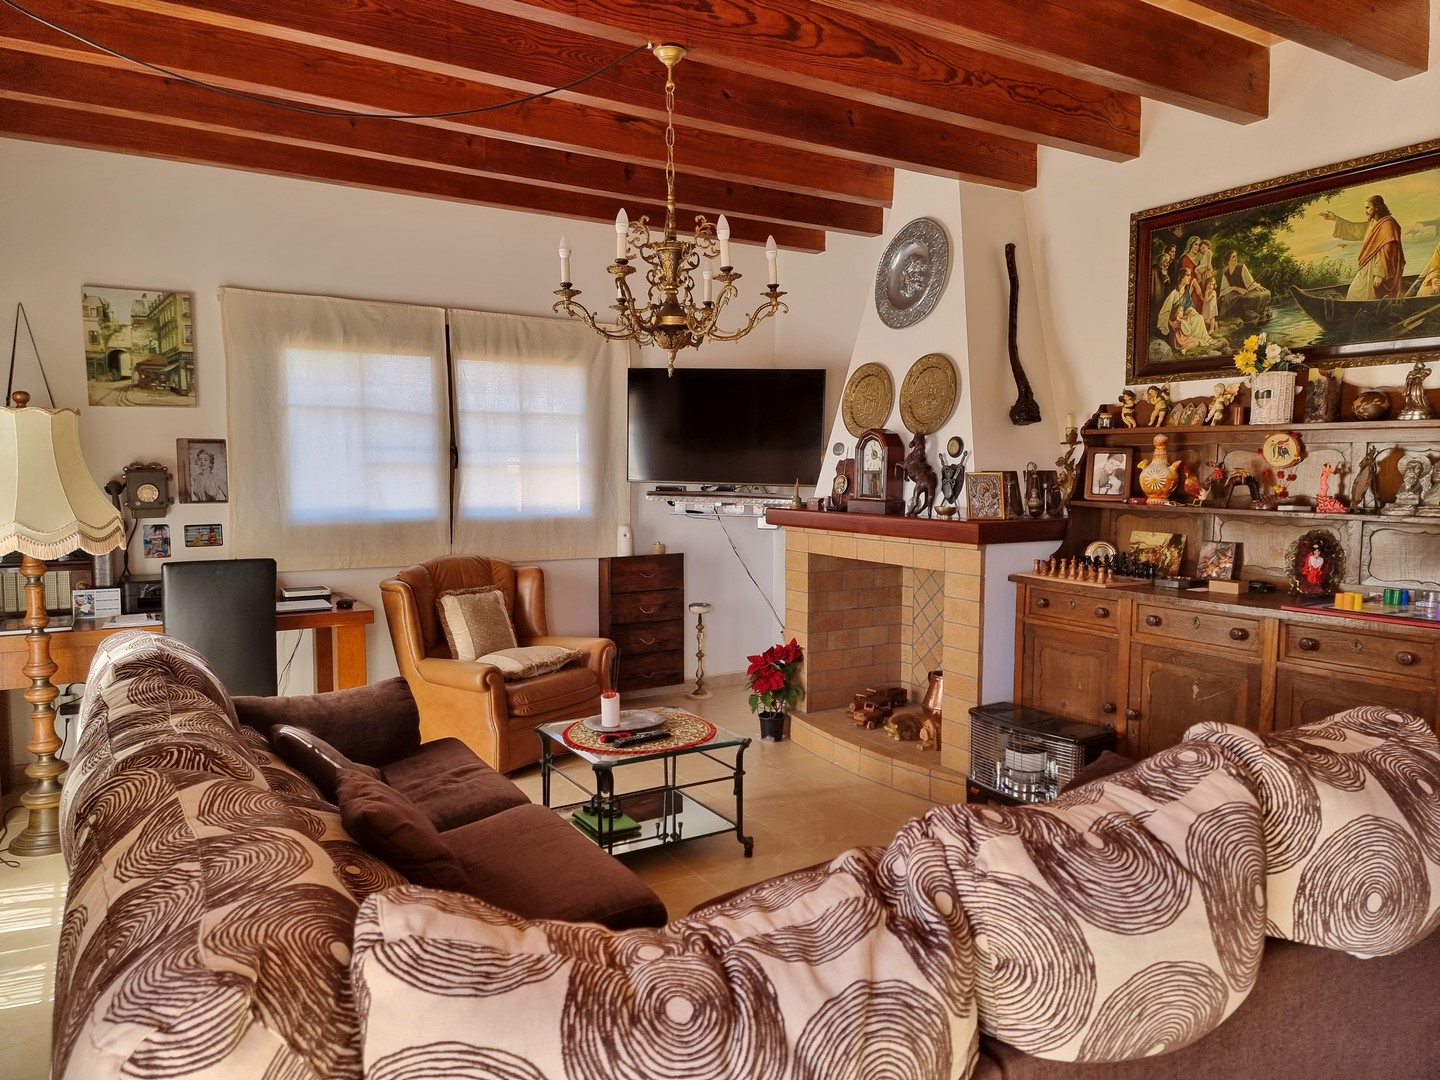 SA COMA: Moderne Villa mit offizieller Vermietungslizenz und gehobener Ausstattung in ruhiger Wohnlage